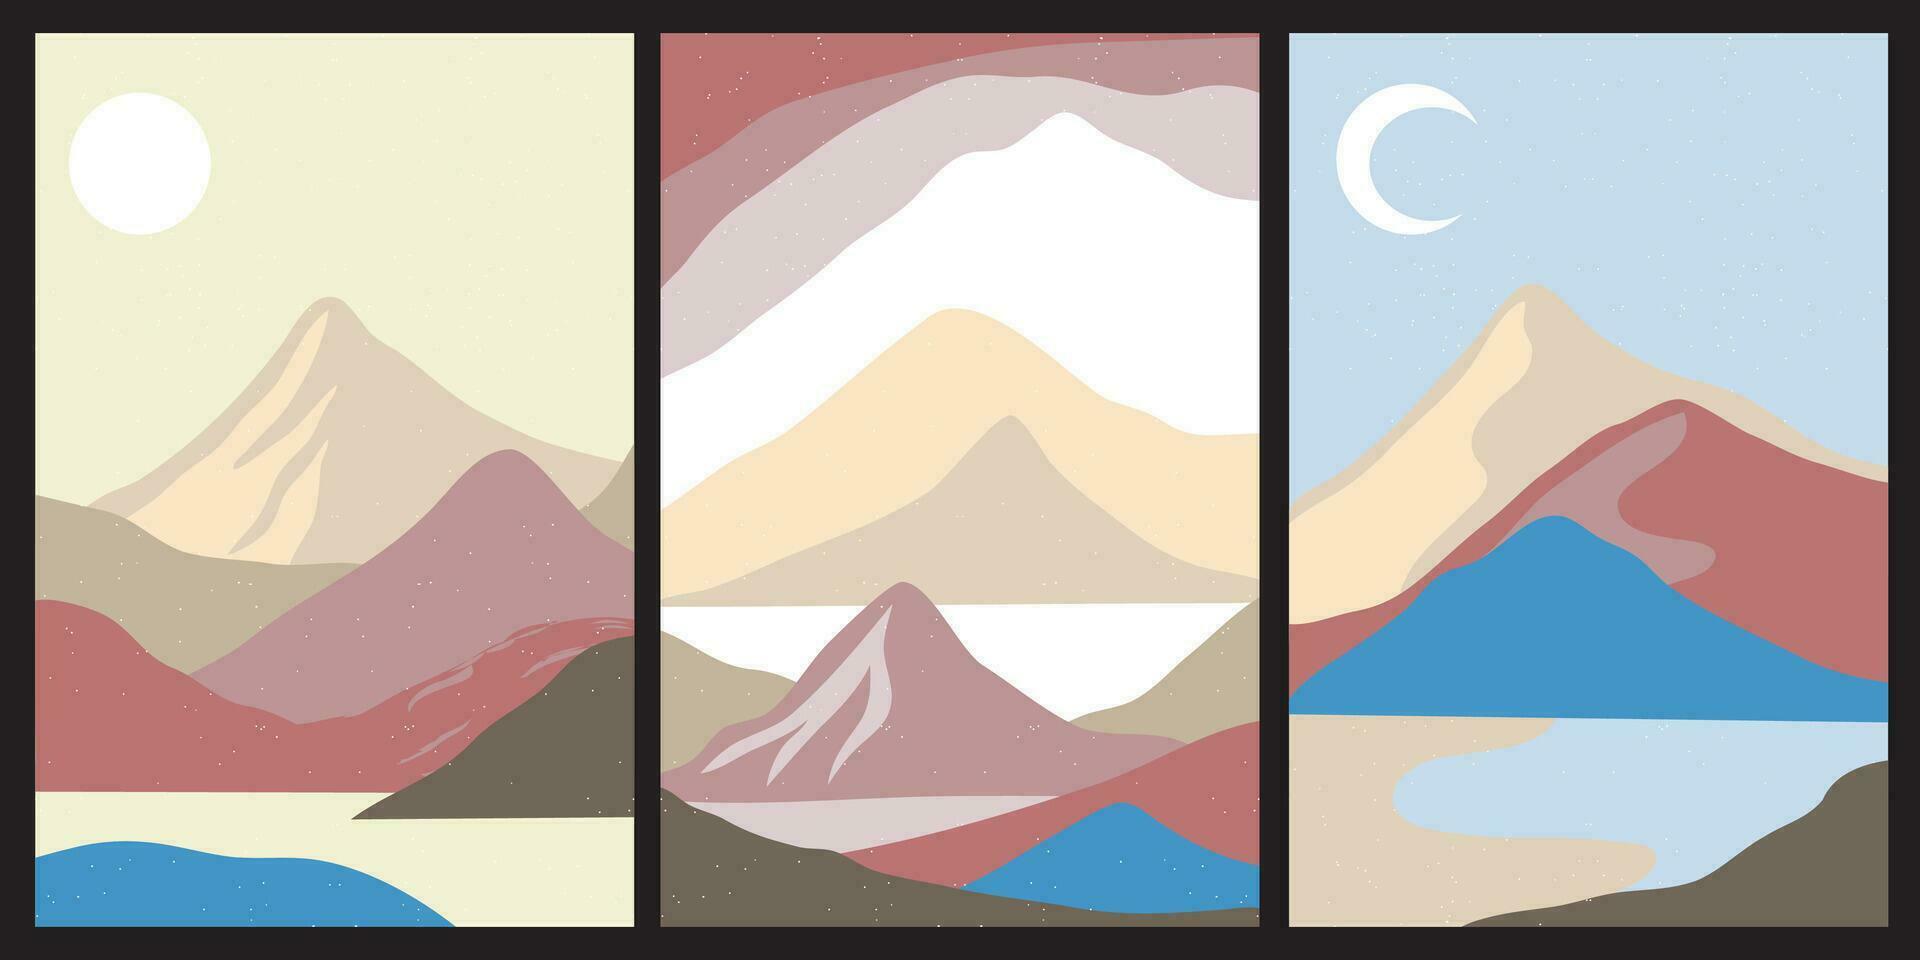 impostato di creativo astratto montagna paesaggio e montagna gamma sfondi.metà secolo moderno vettore illustrazioni con mano disegnato montagne, mare o lago, cielo, sole e luna.trendy